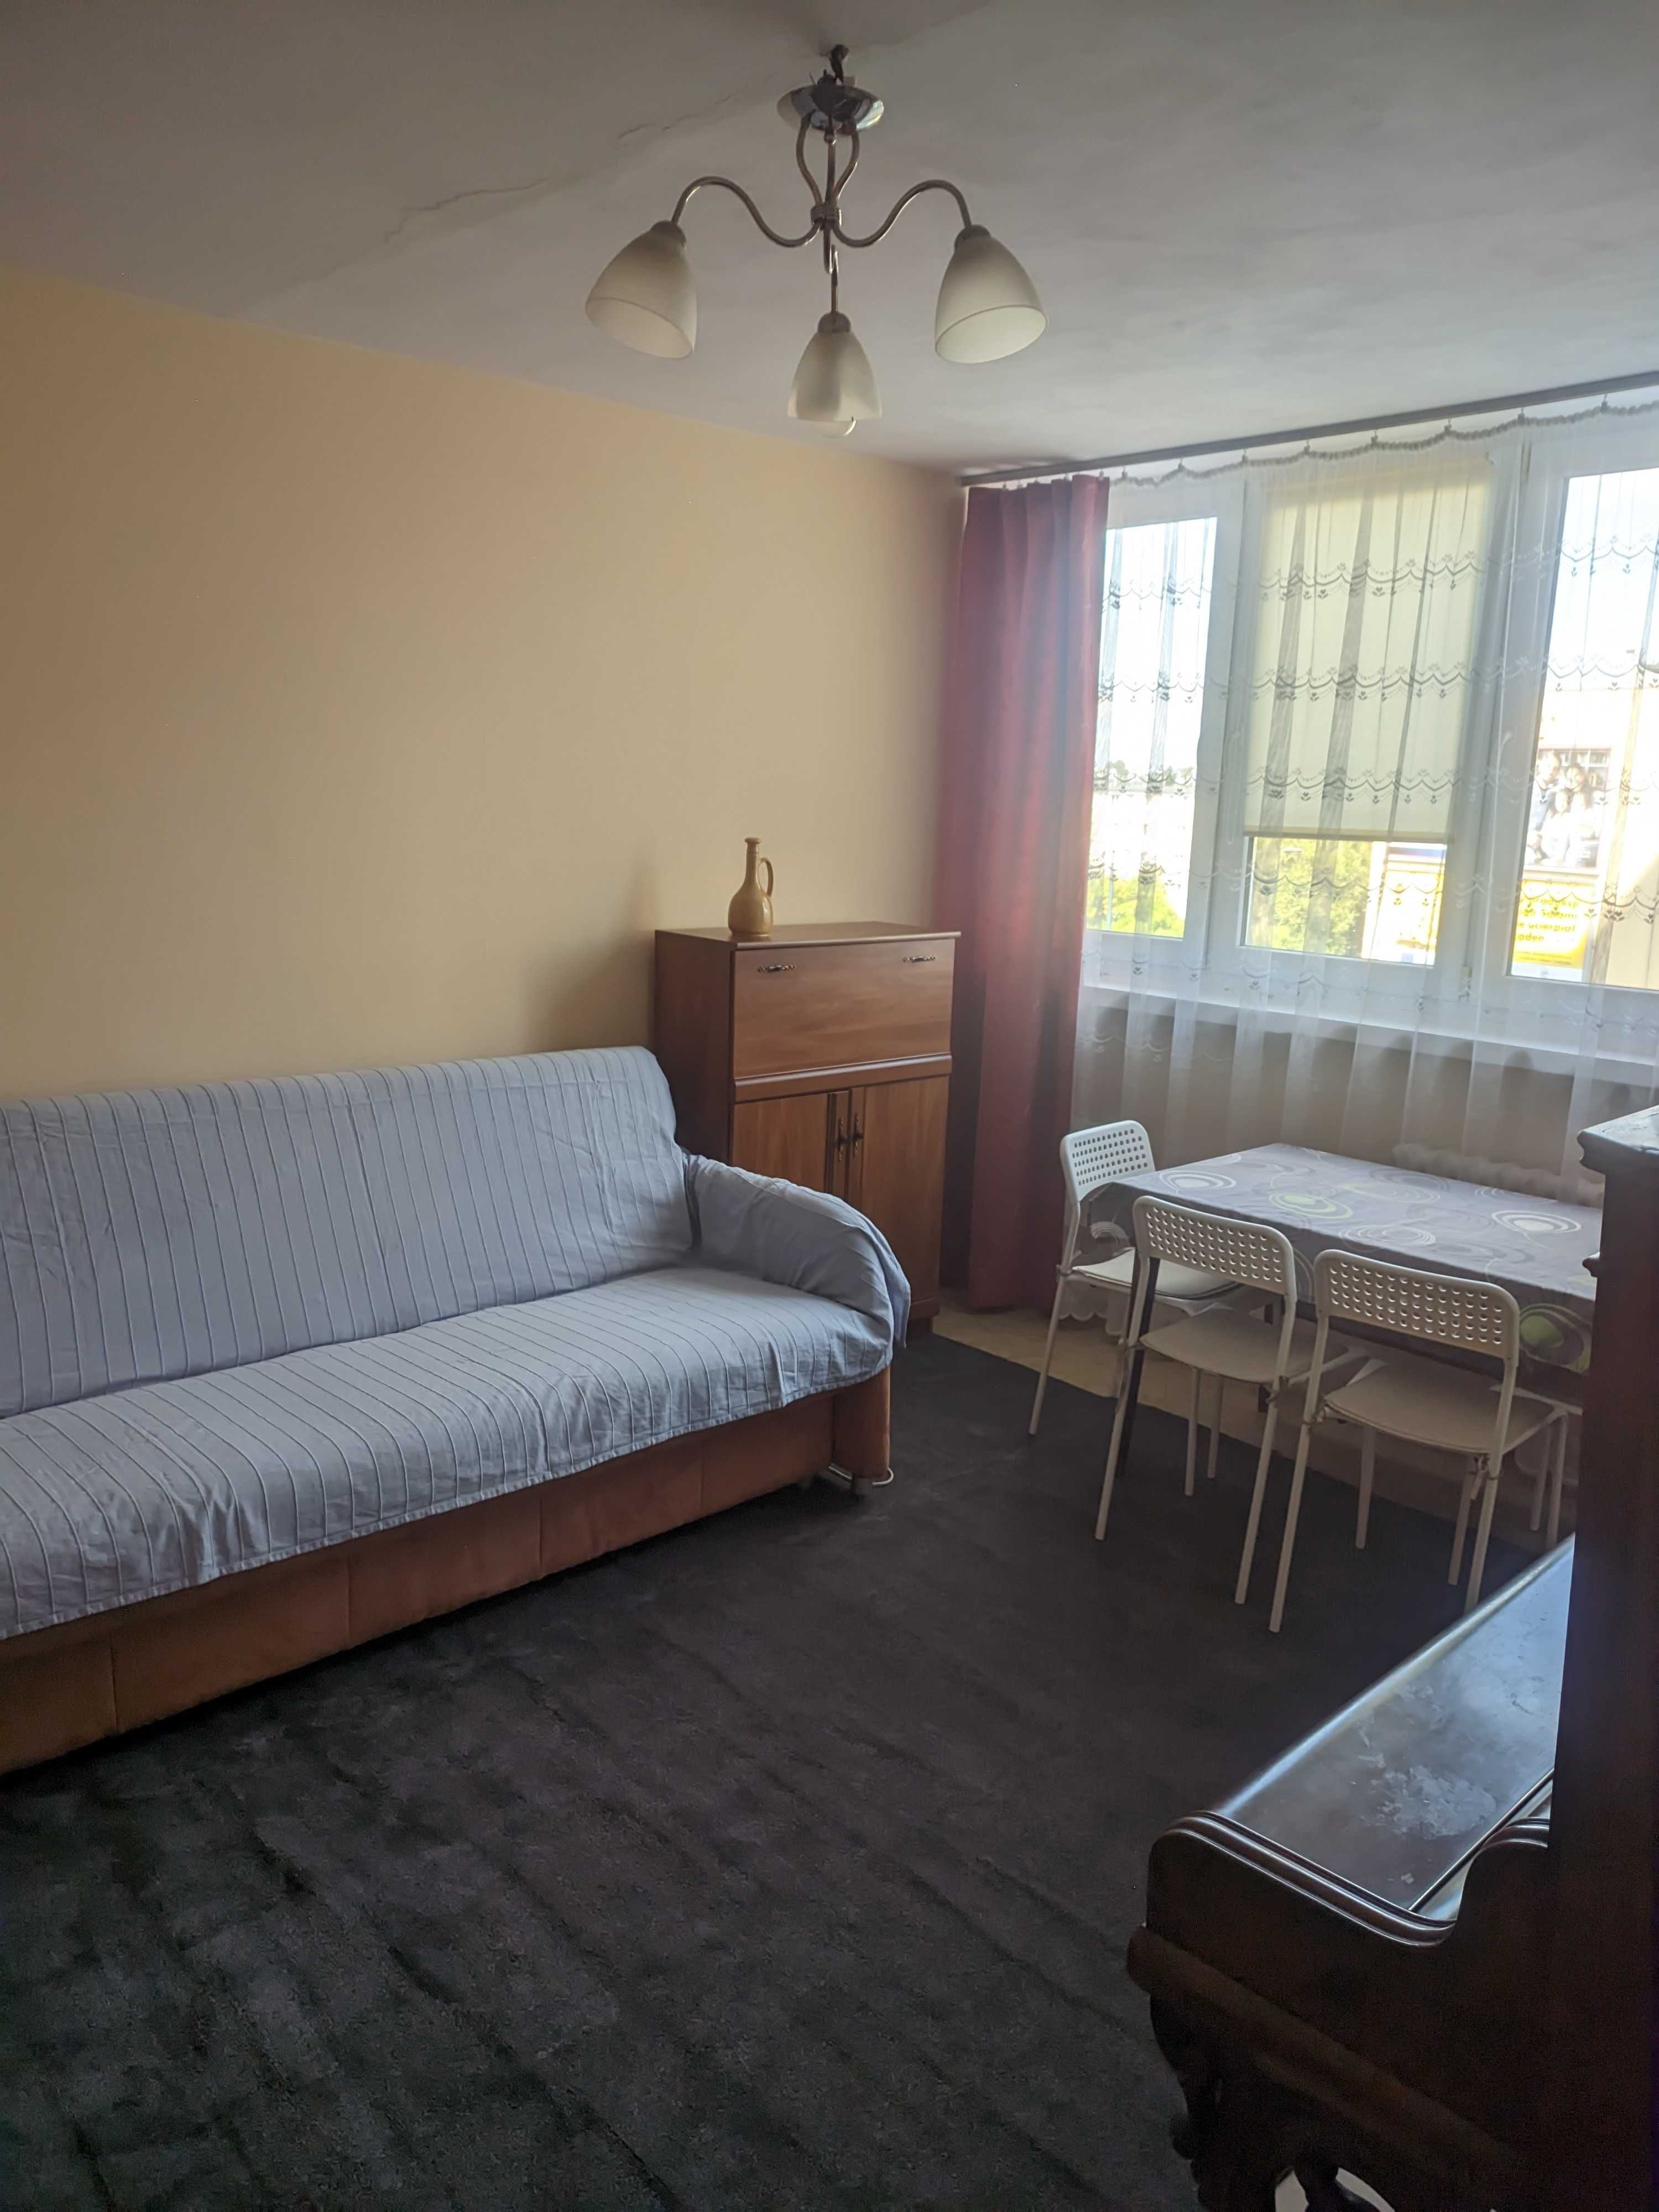 3-pokojowe mieszkanie umeblowane i wyposażone na Dąbrowie wynajmę,1300